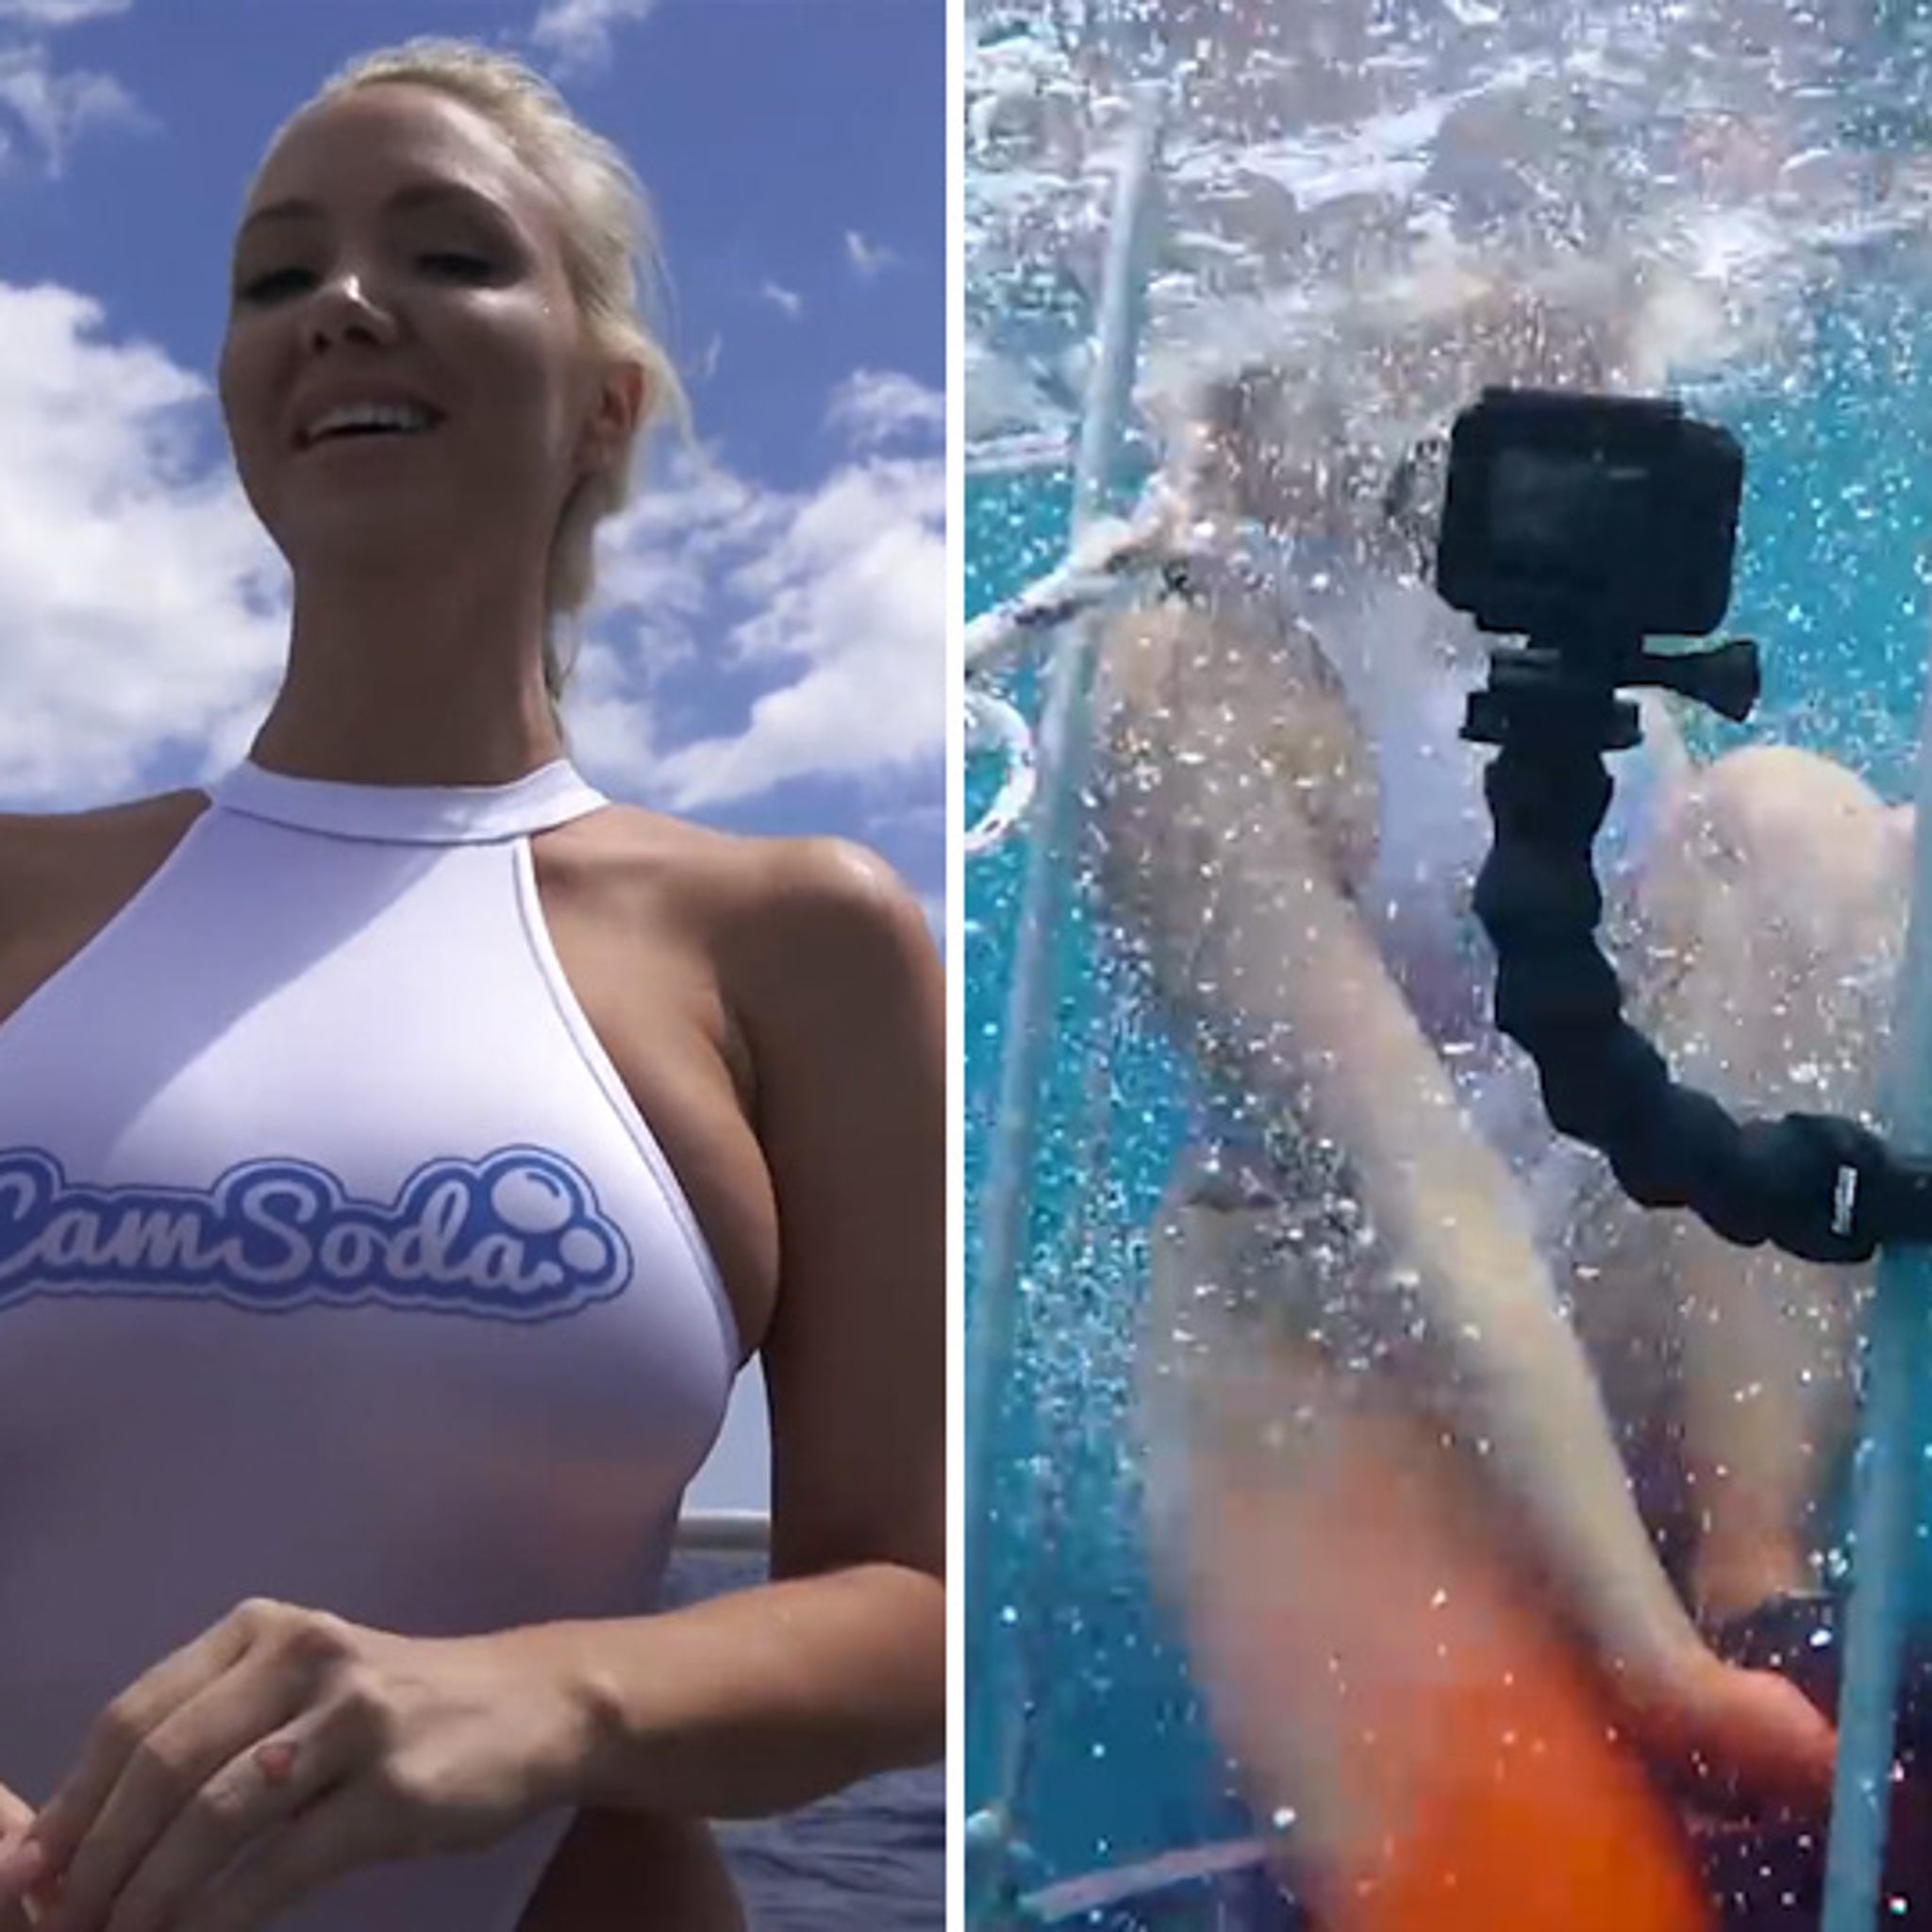 Porn Star Bitten by Shark While Filming Underwater Scene